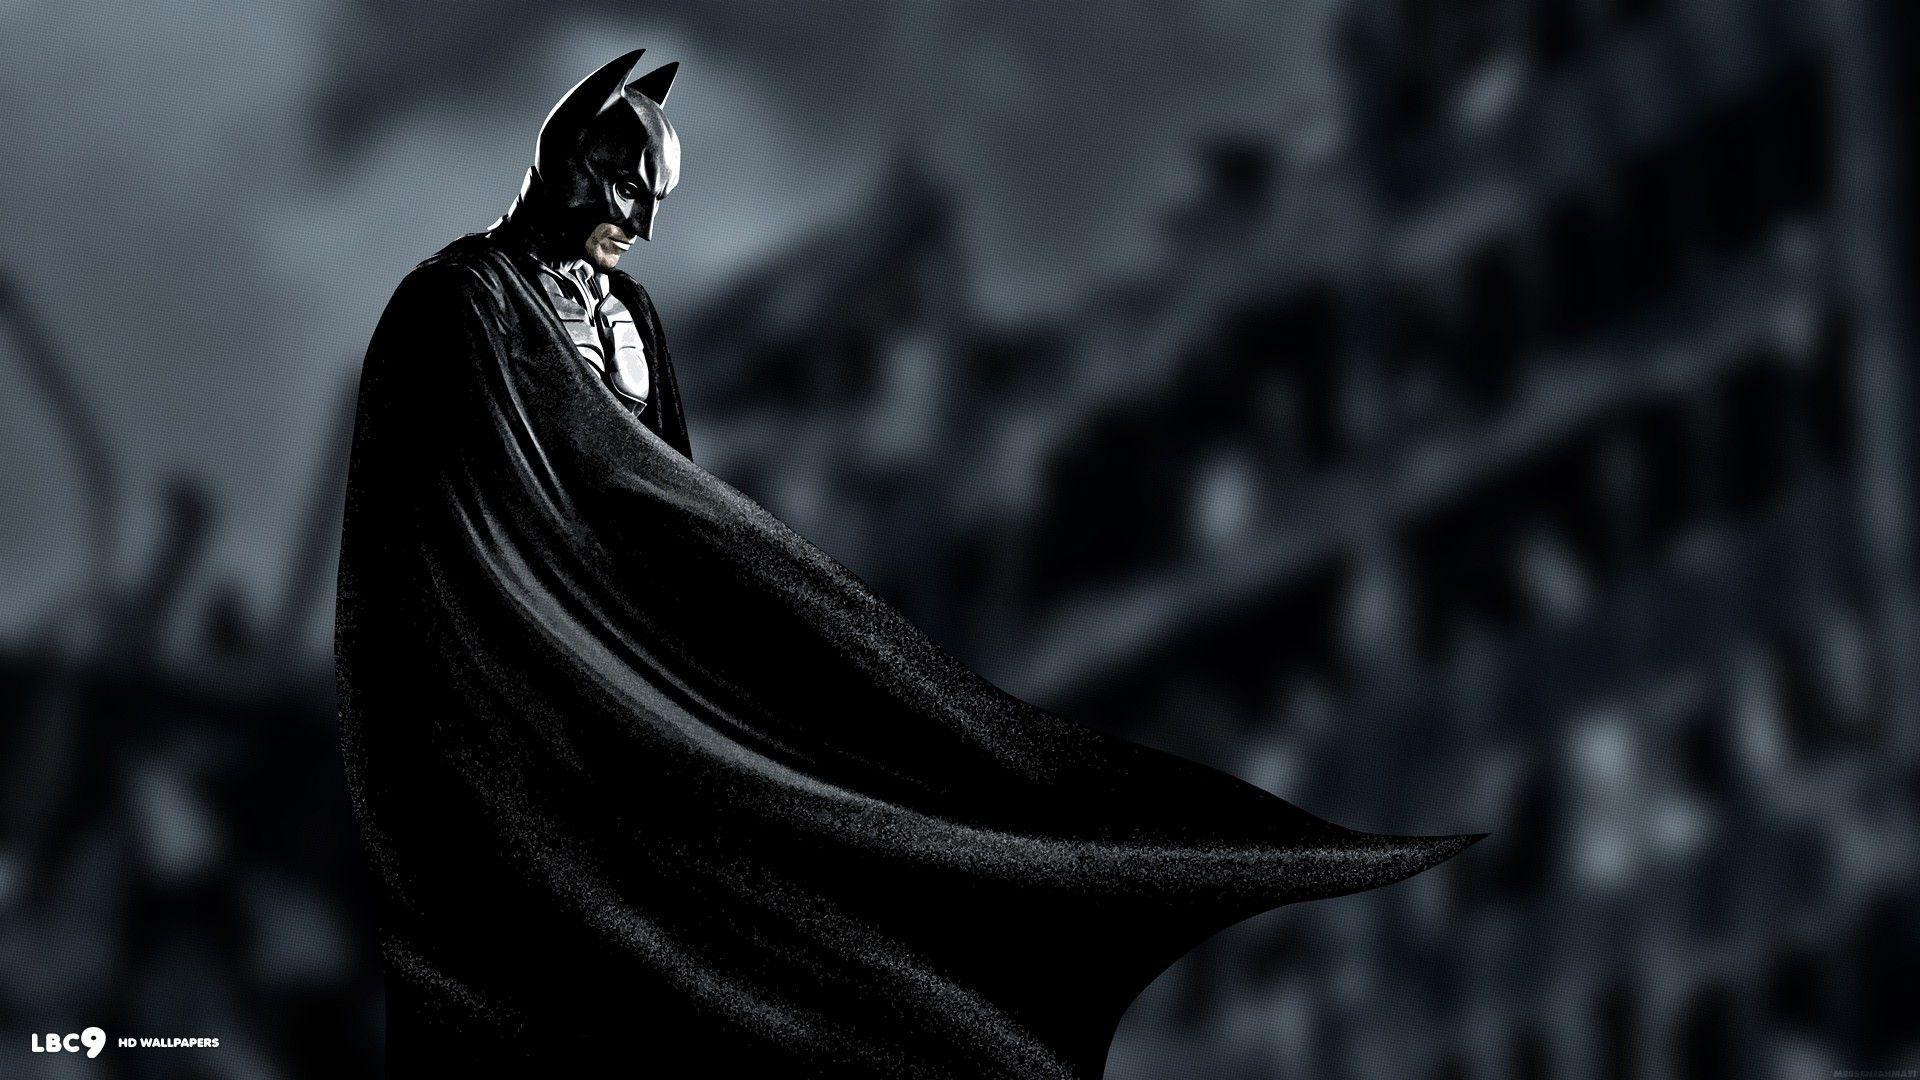 Wallpaper For > Batman Wallpaper HD 1080p